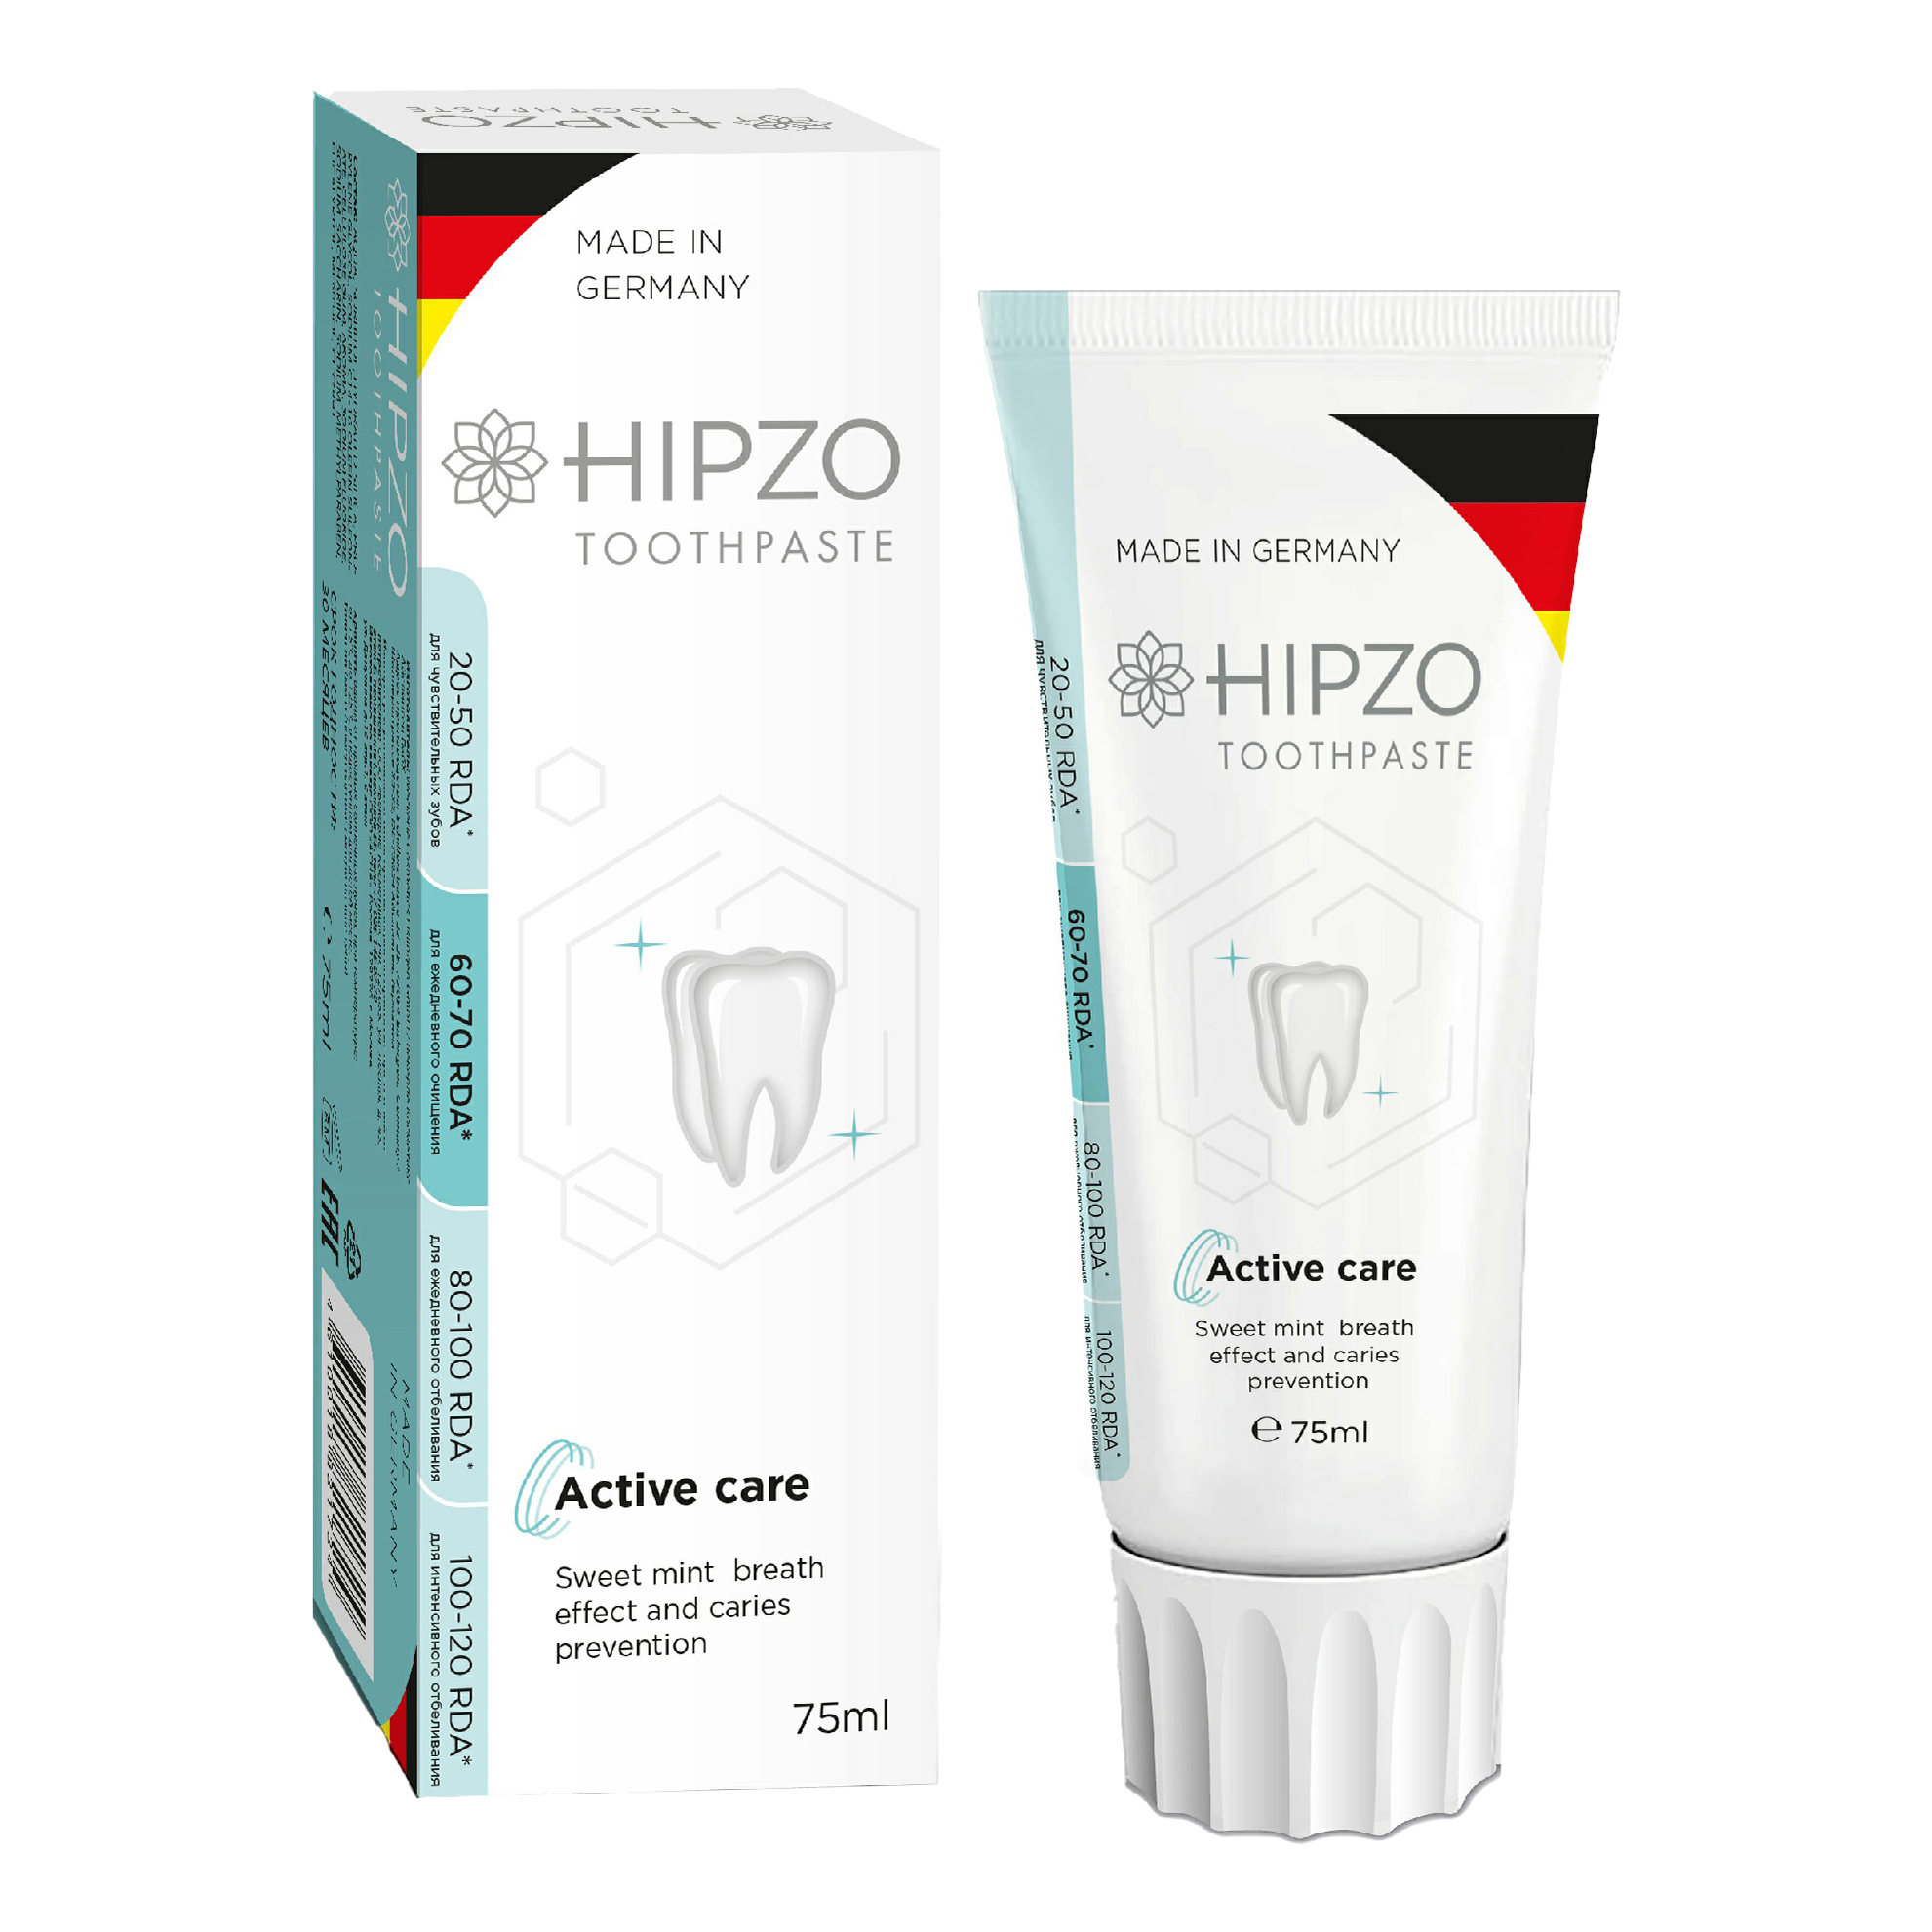 Зубная паста Hipzo Active care сладкая мята для свежести дыхания и защиты от кариеса 75 мл зубная паста hipzo active care сладкая мята для свежести дыхания и защиты от кариеса 75 мл